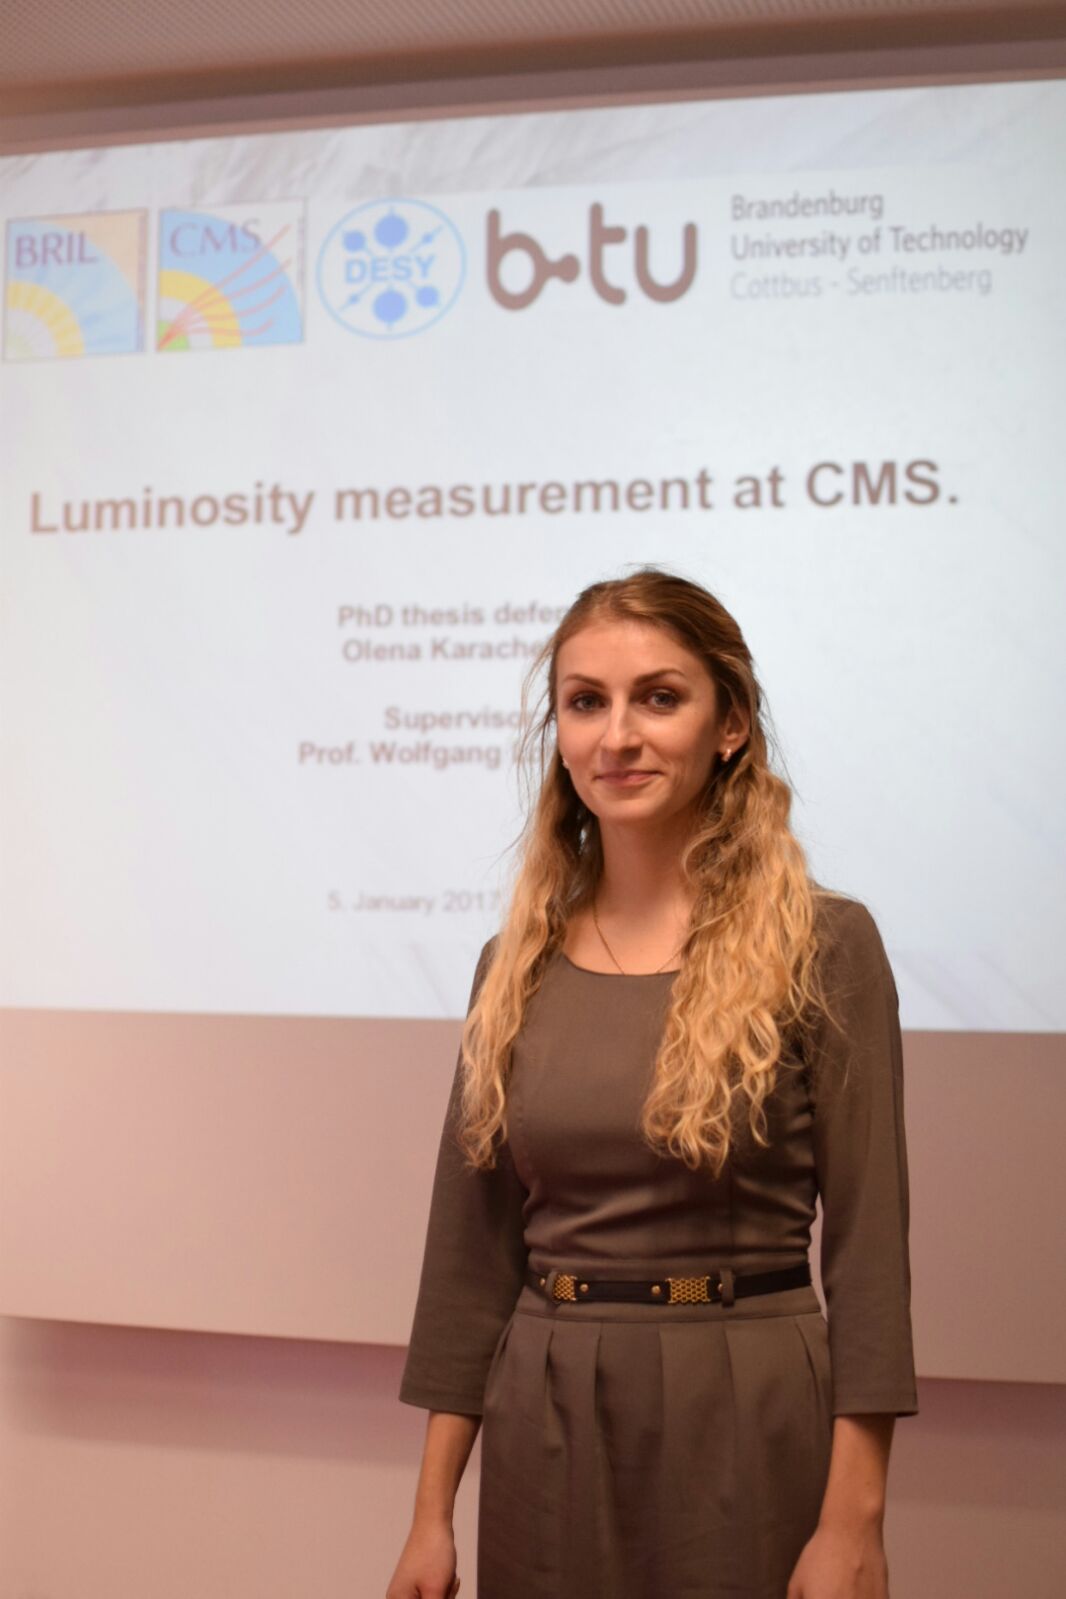 Die junge Physikerin während einer Präsentation zur Leuchtkraftmessung am CMS